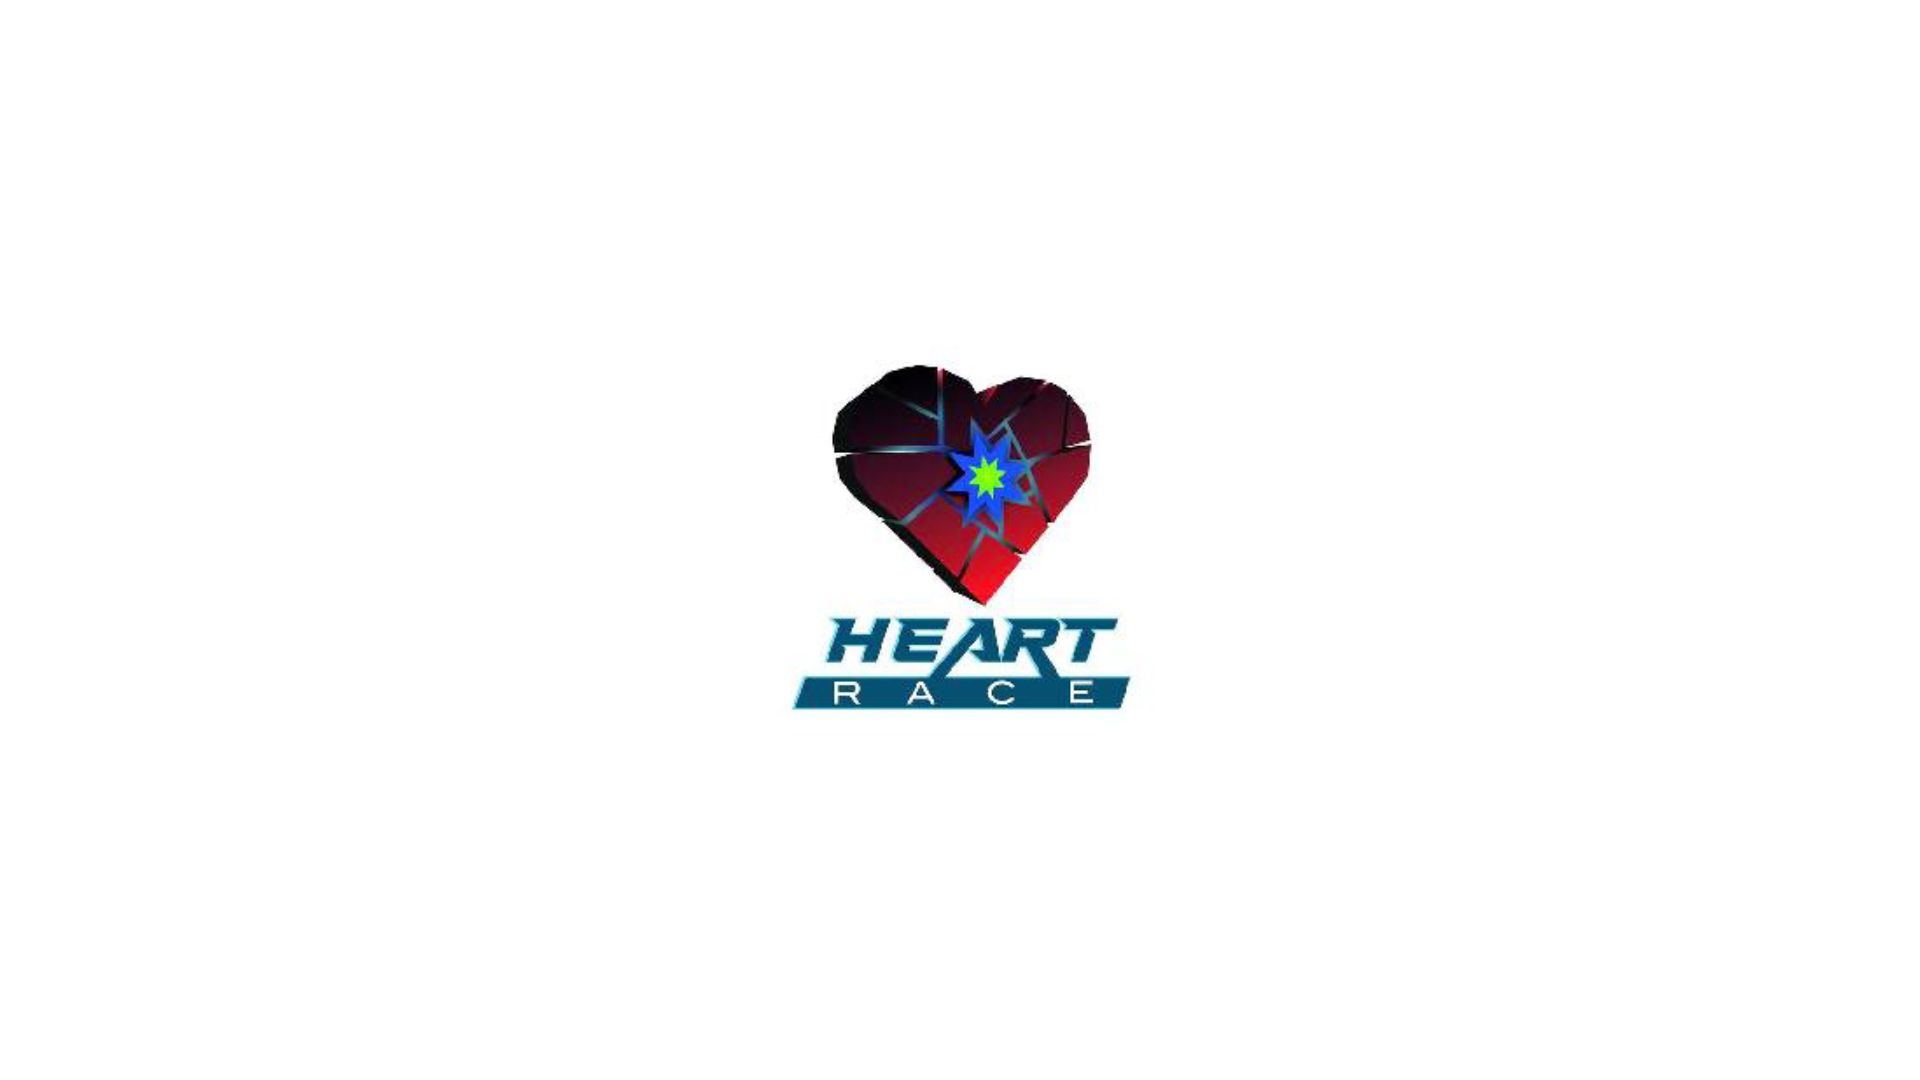 Nuevo registro de marca en Pozoblanco - HEART RACE